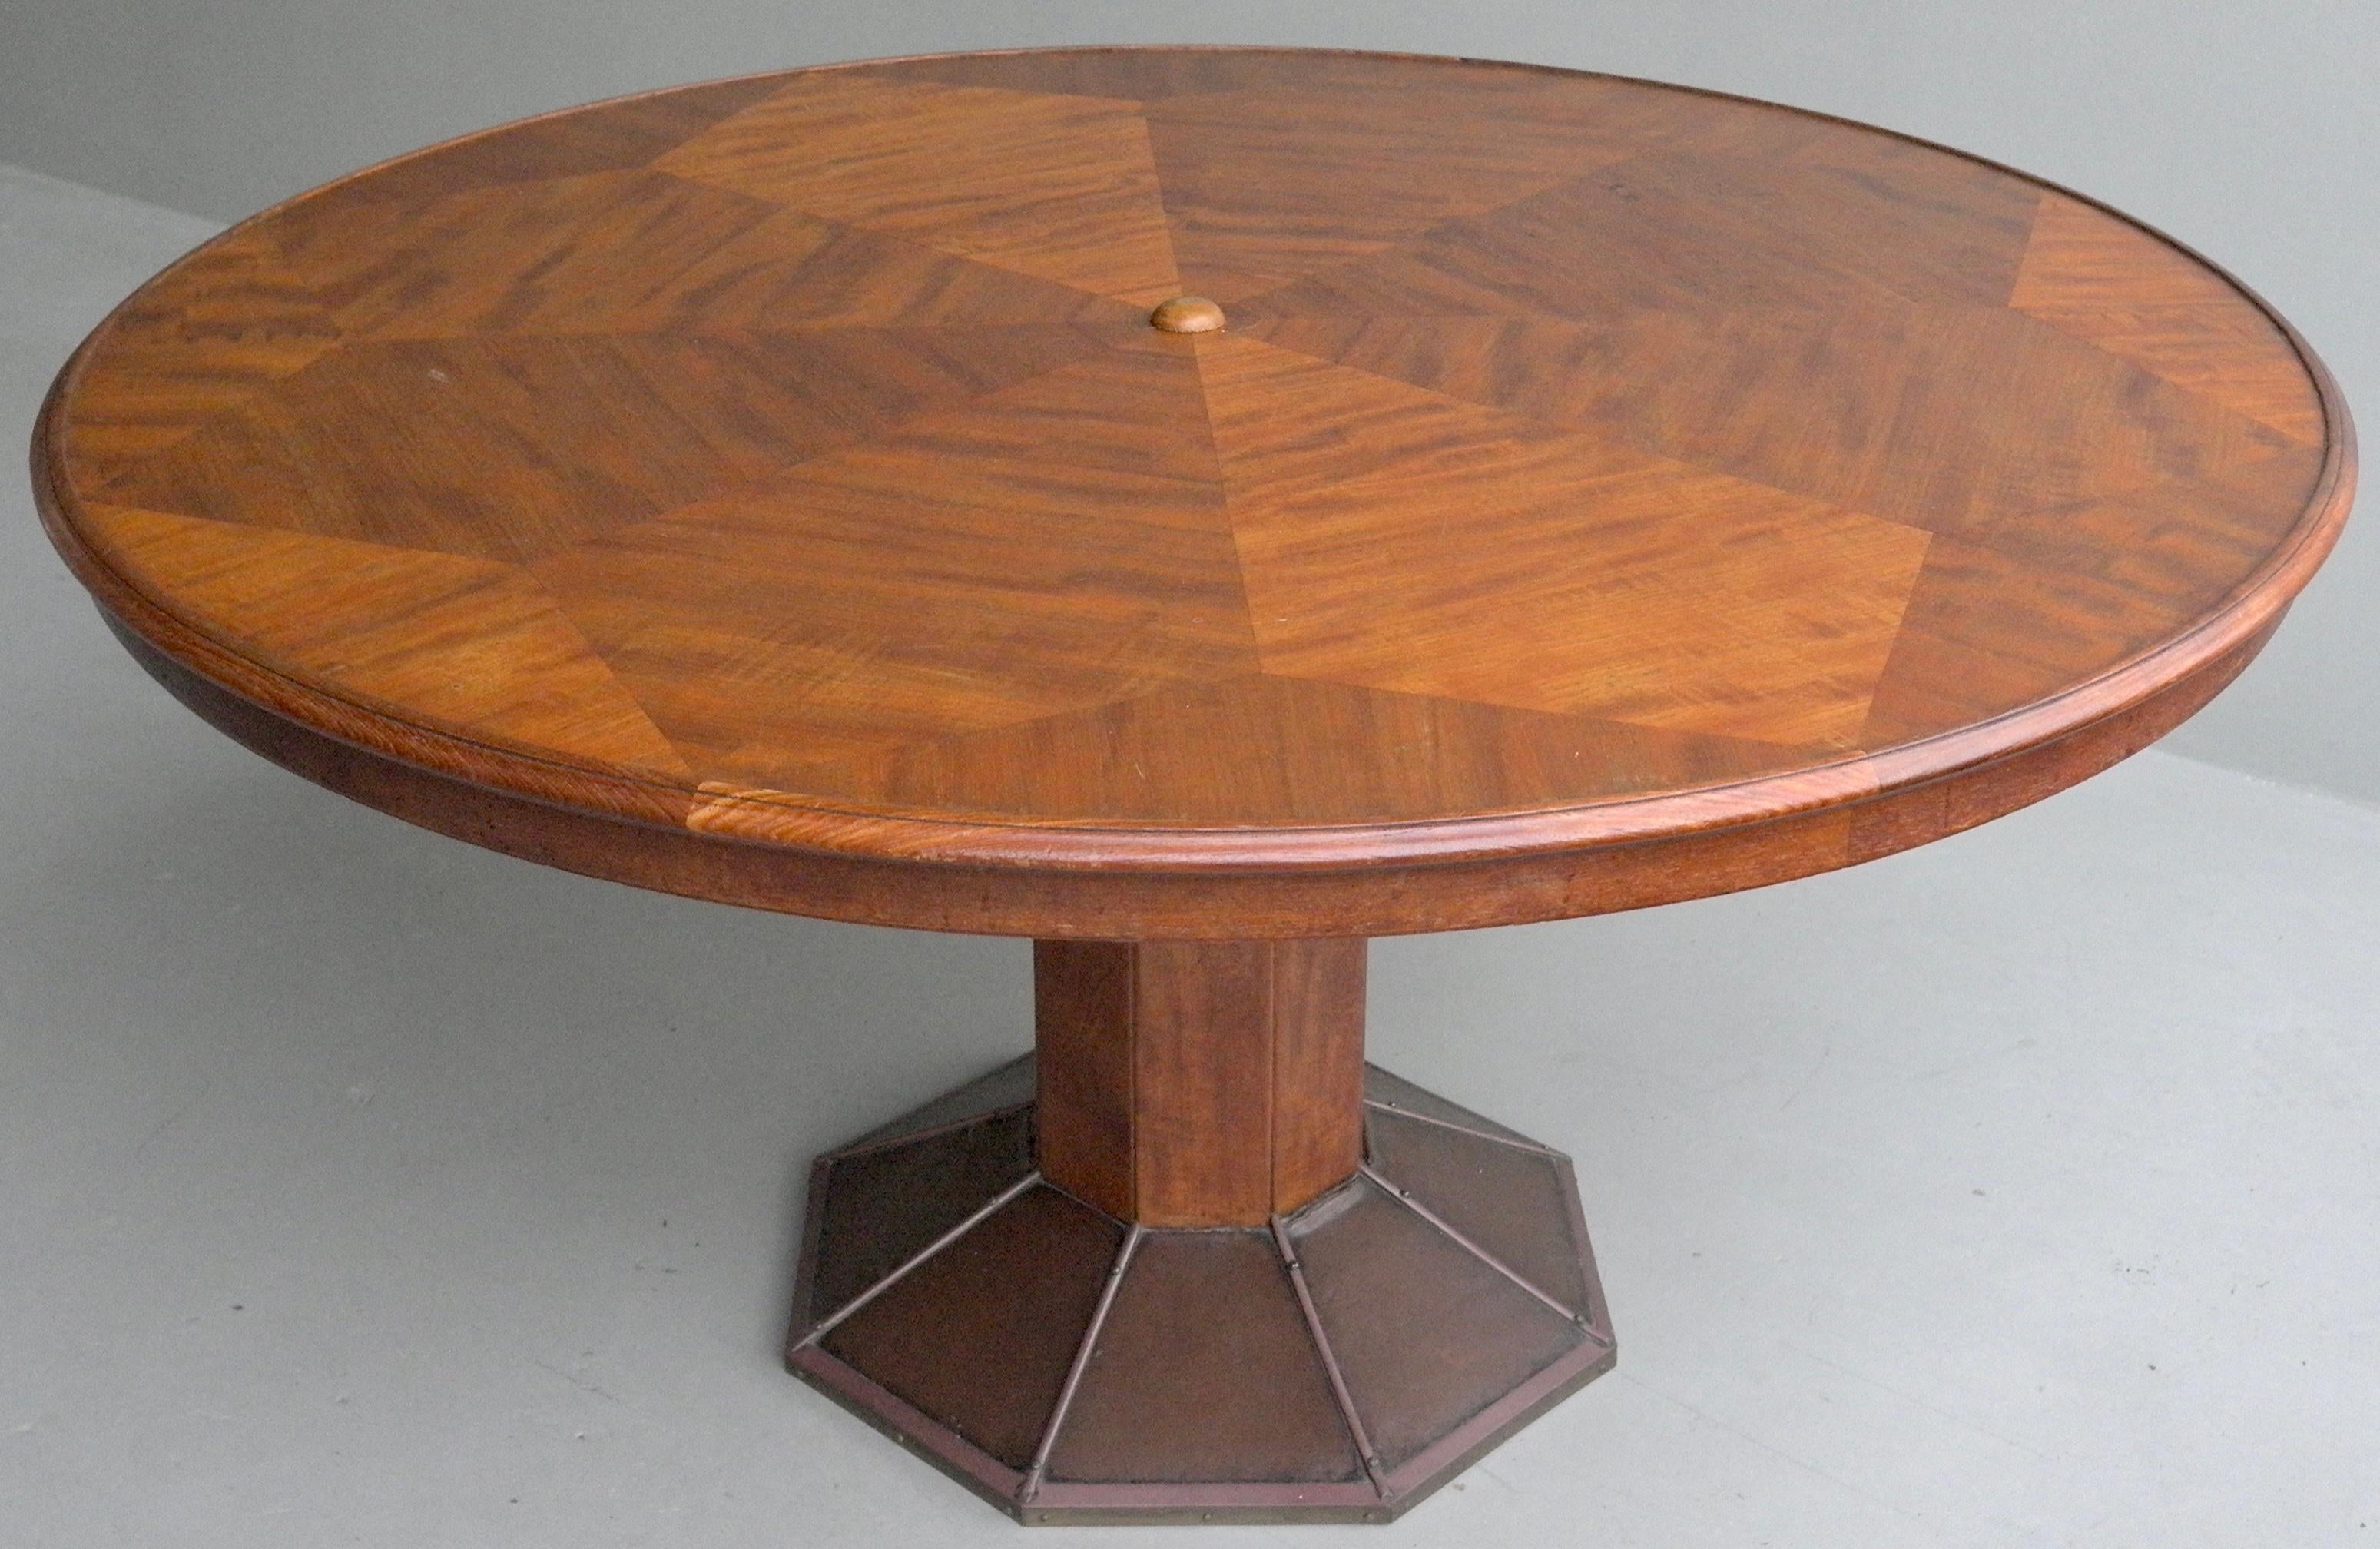 Grande table ronde sculpturale en bois Art Déco de H.Pander & Zonen. Pièce en bois de bonne facture, la base comporte de fins éléments en cuivre.

Veuillez nous contacter pour connaître les options d'expédition dans le monde entier.